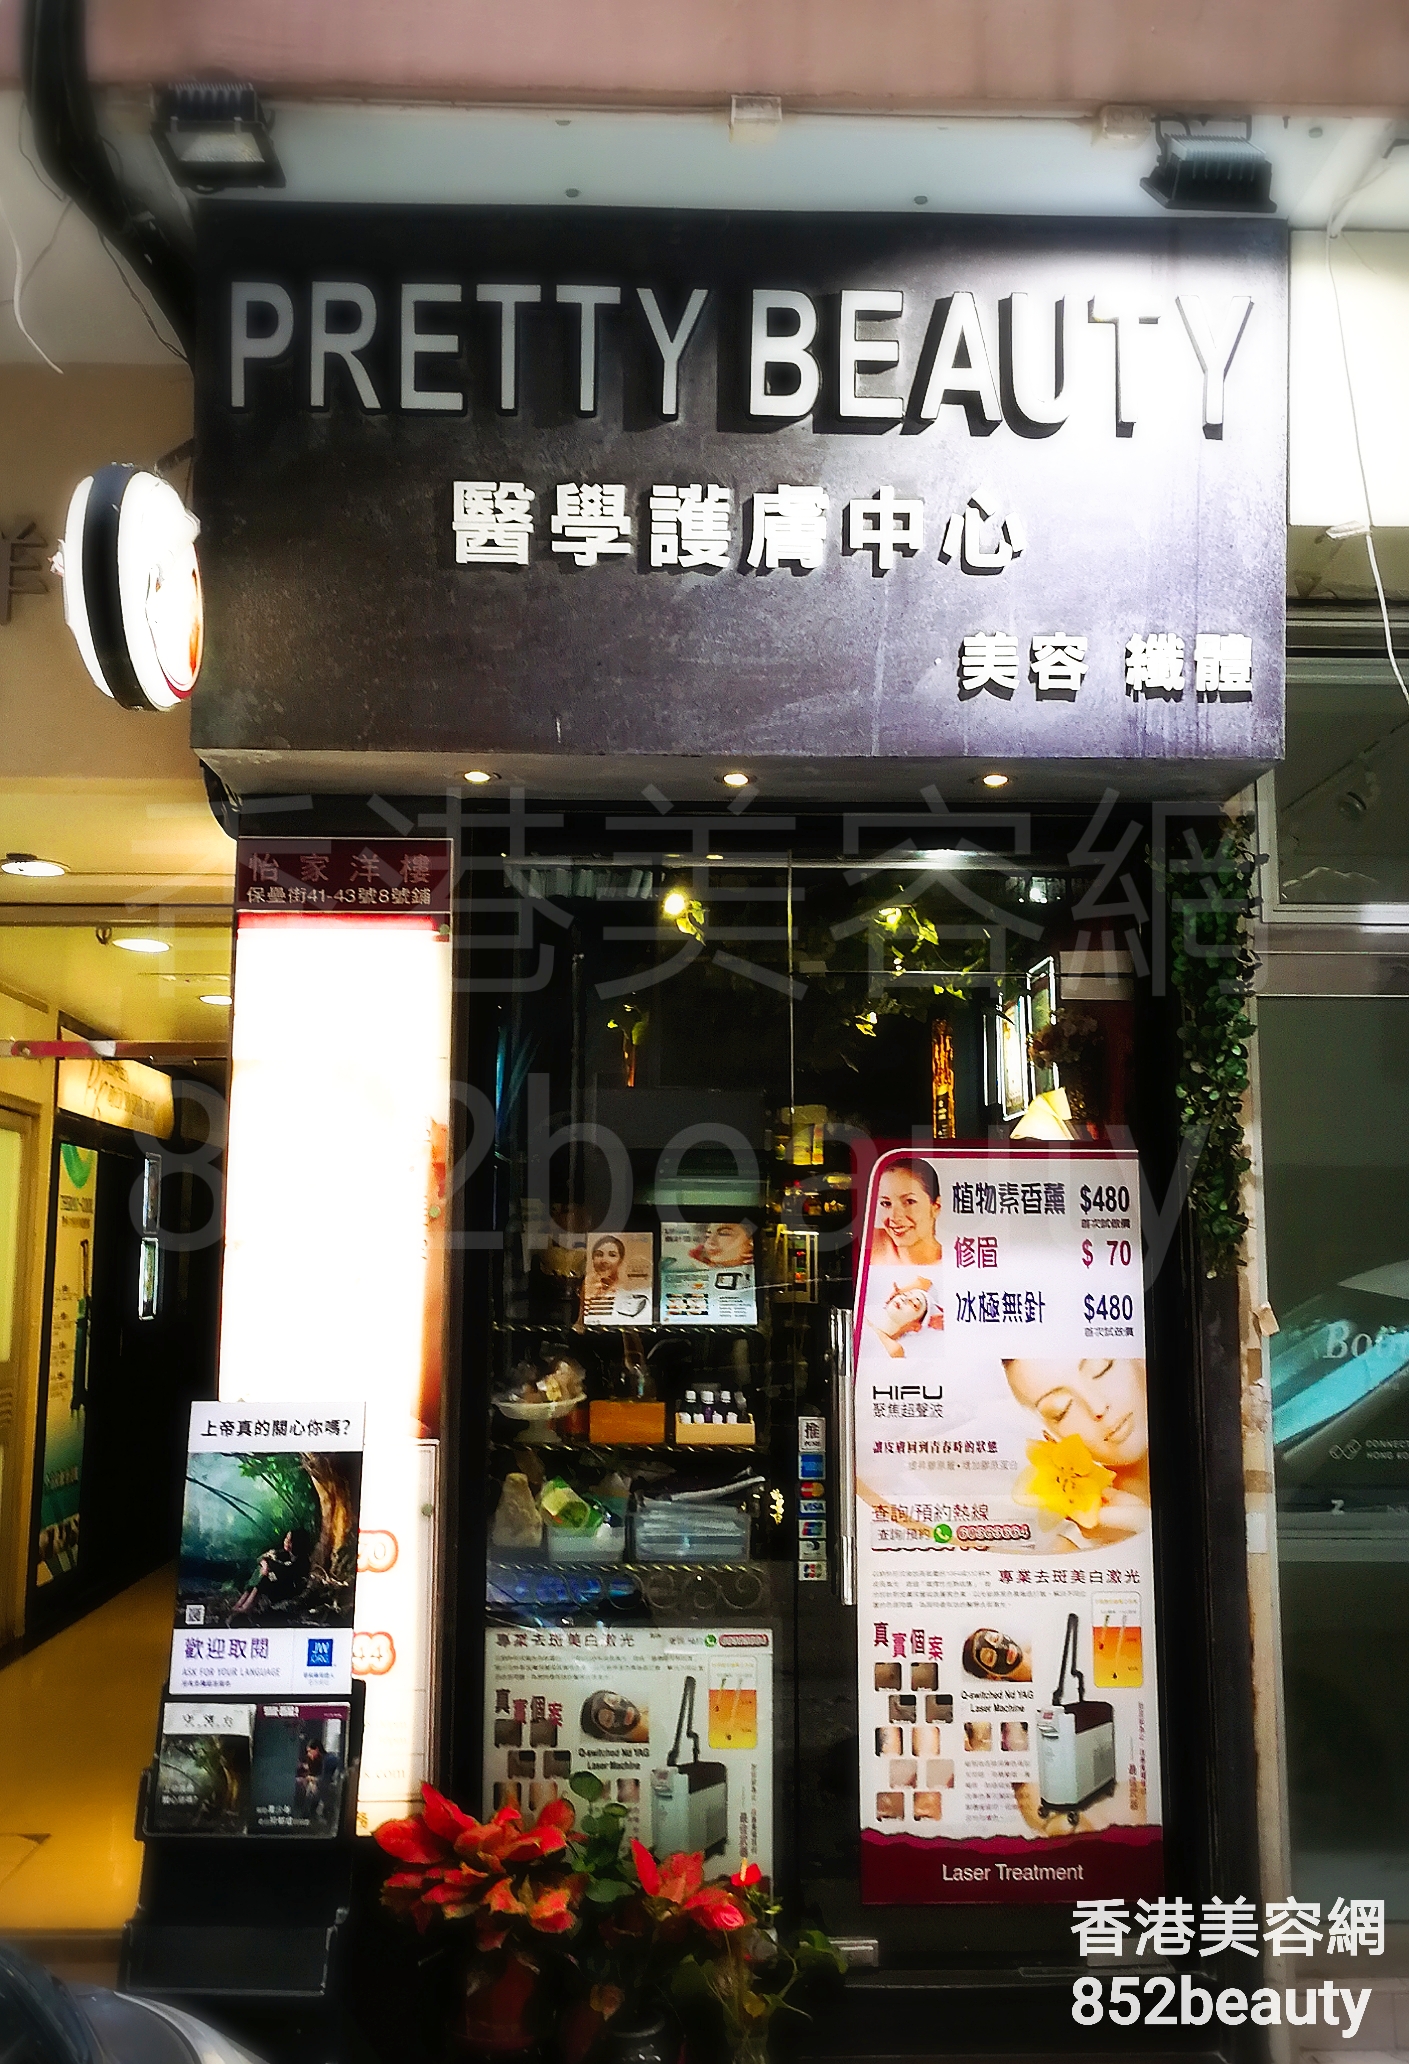 光学美容: Pretty Beauty 醫學護膚中心 (北角店)